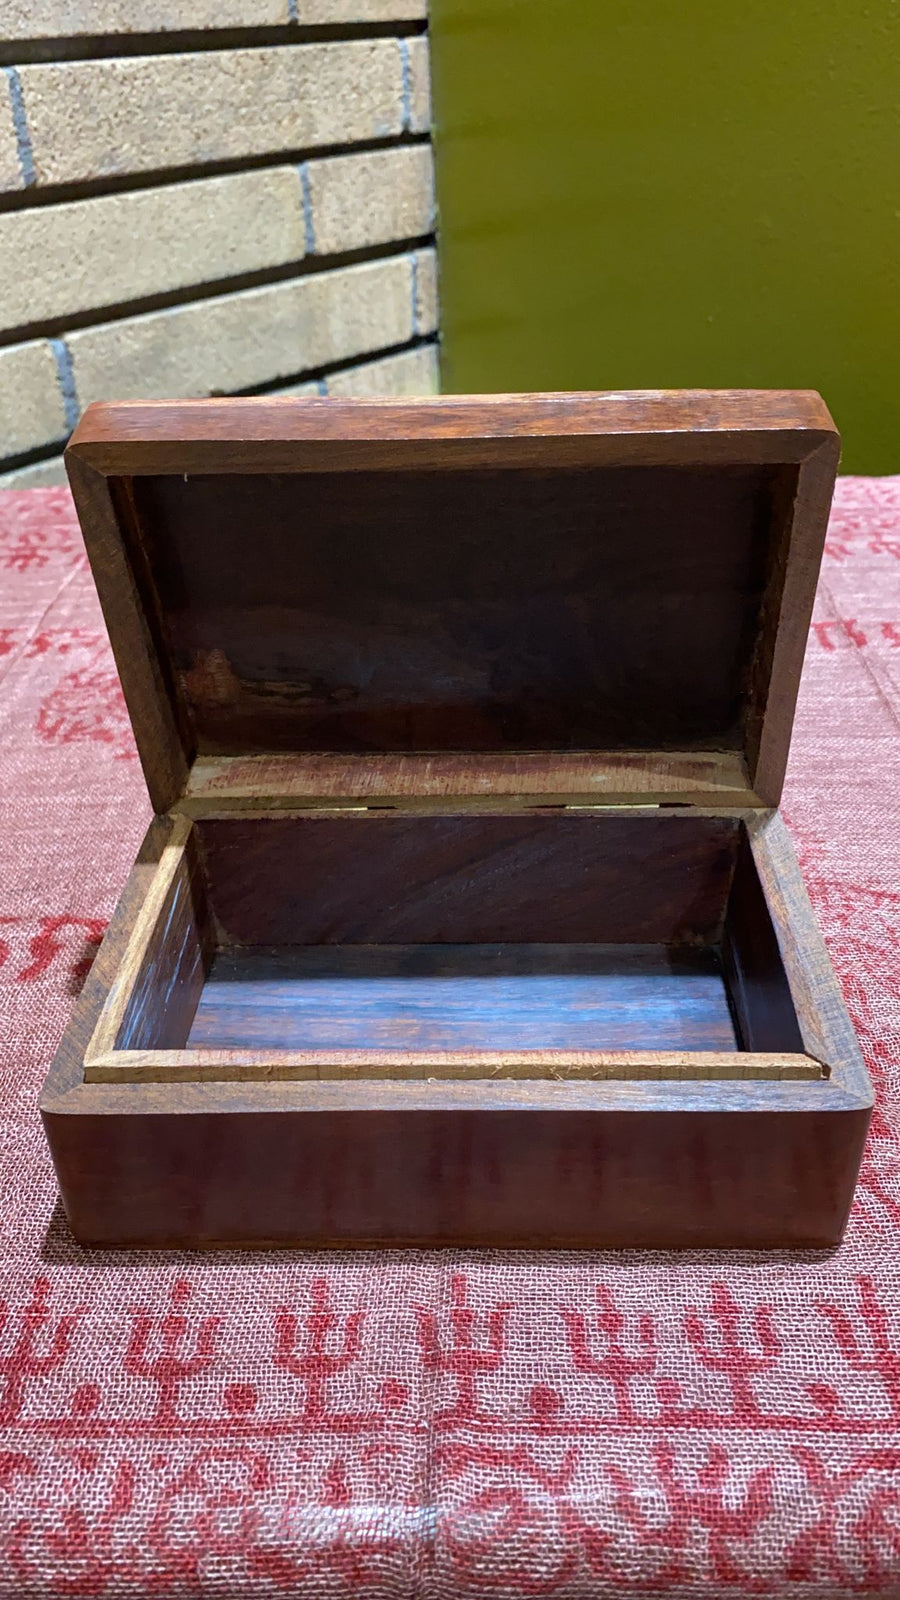 vintage wooden boxes for sale in Eugene, OR